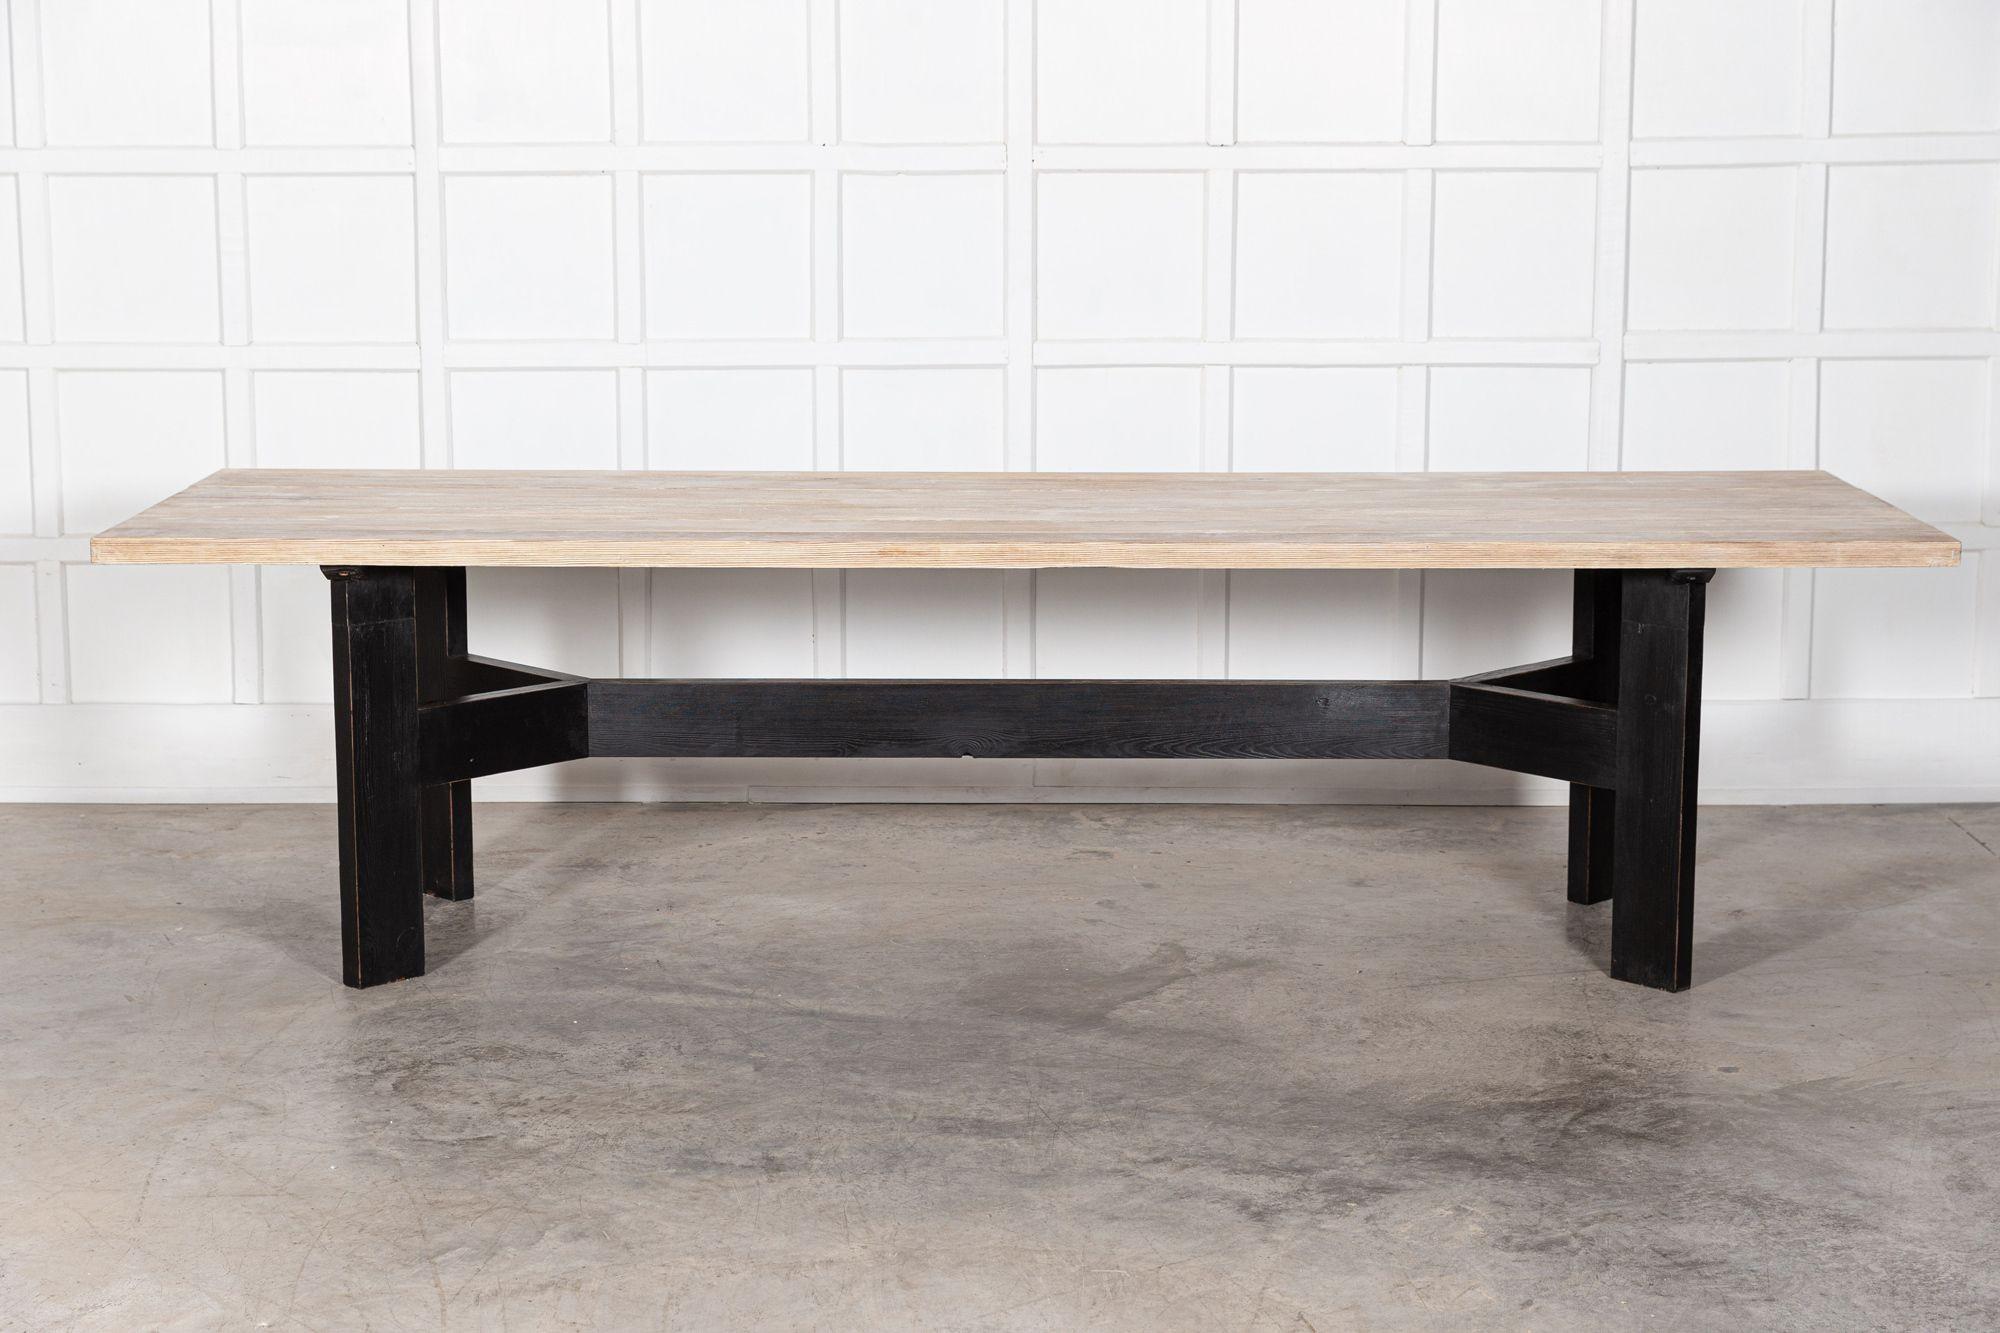 vers 1970
Table de salle à manger monumentale en pin ébénisé blanchi de style brutaliste anglais
Une forme et une échelle exceptionnelles
(La partie supérieure est amovible)
Dimensions : L 303 x P 97 x H 78 cm.
  